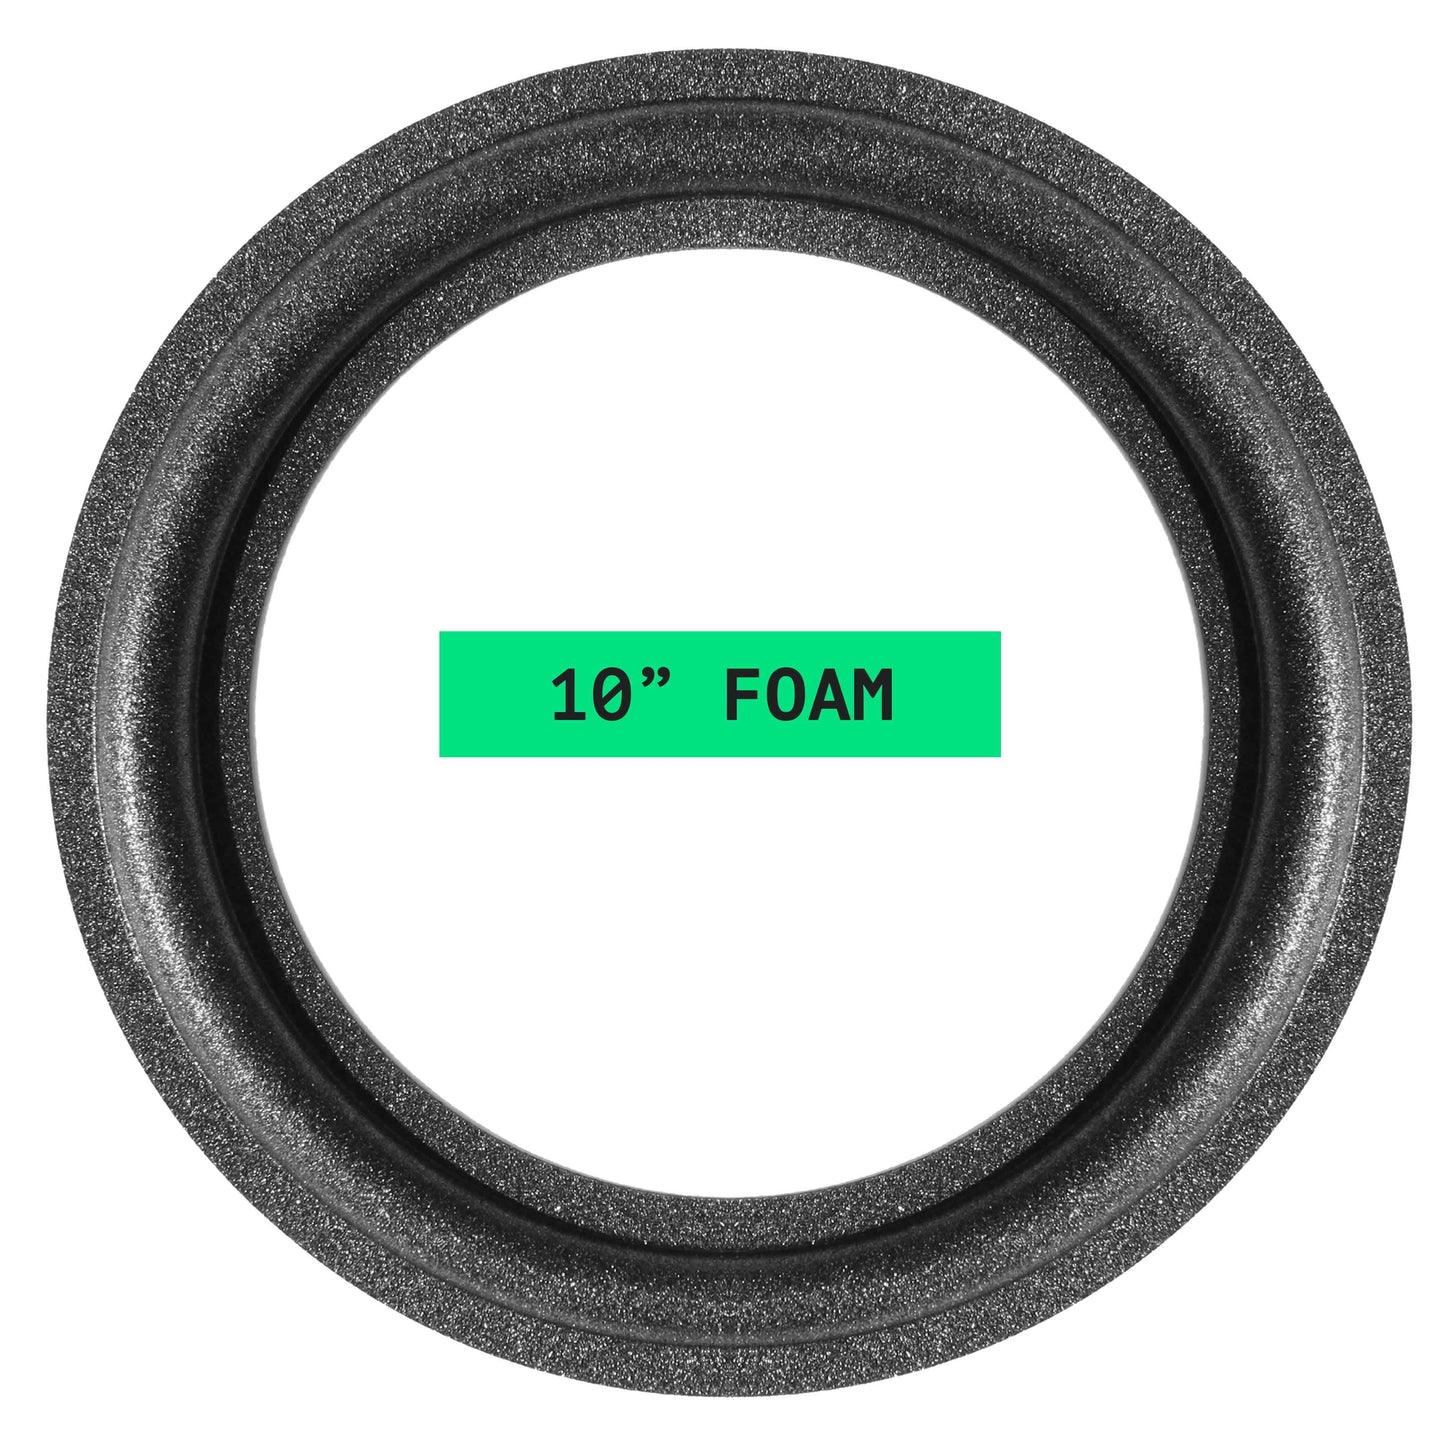 Paradigm 10" Foam Repair Kit